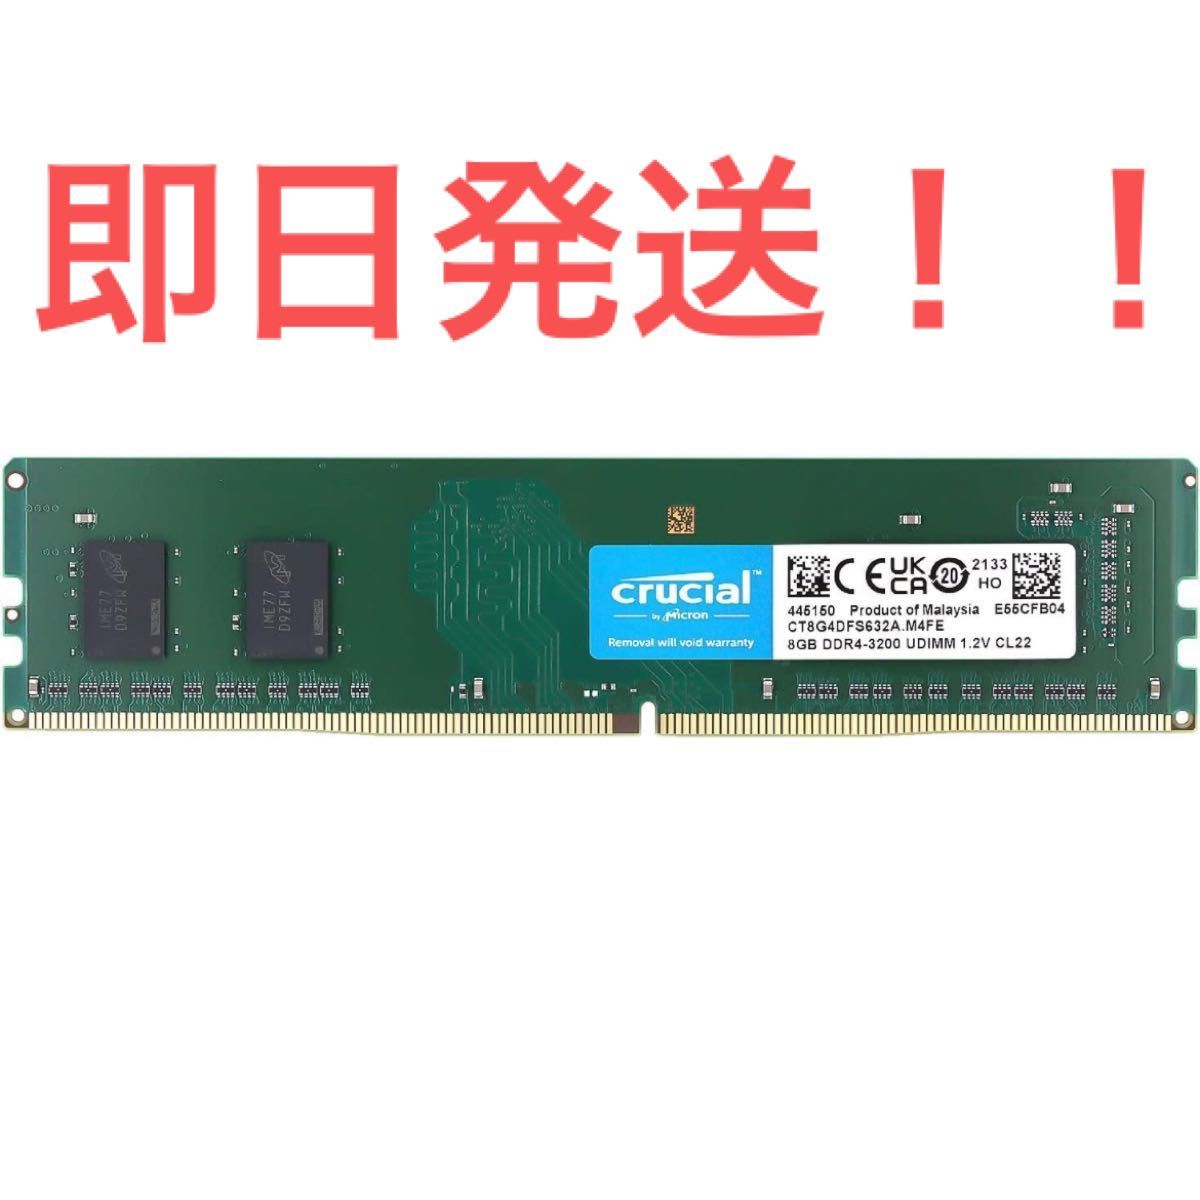 Crucial デスクトップPC用メモリ DDR4 3200 8gb UDIMM